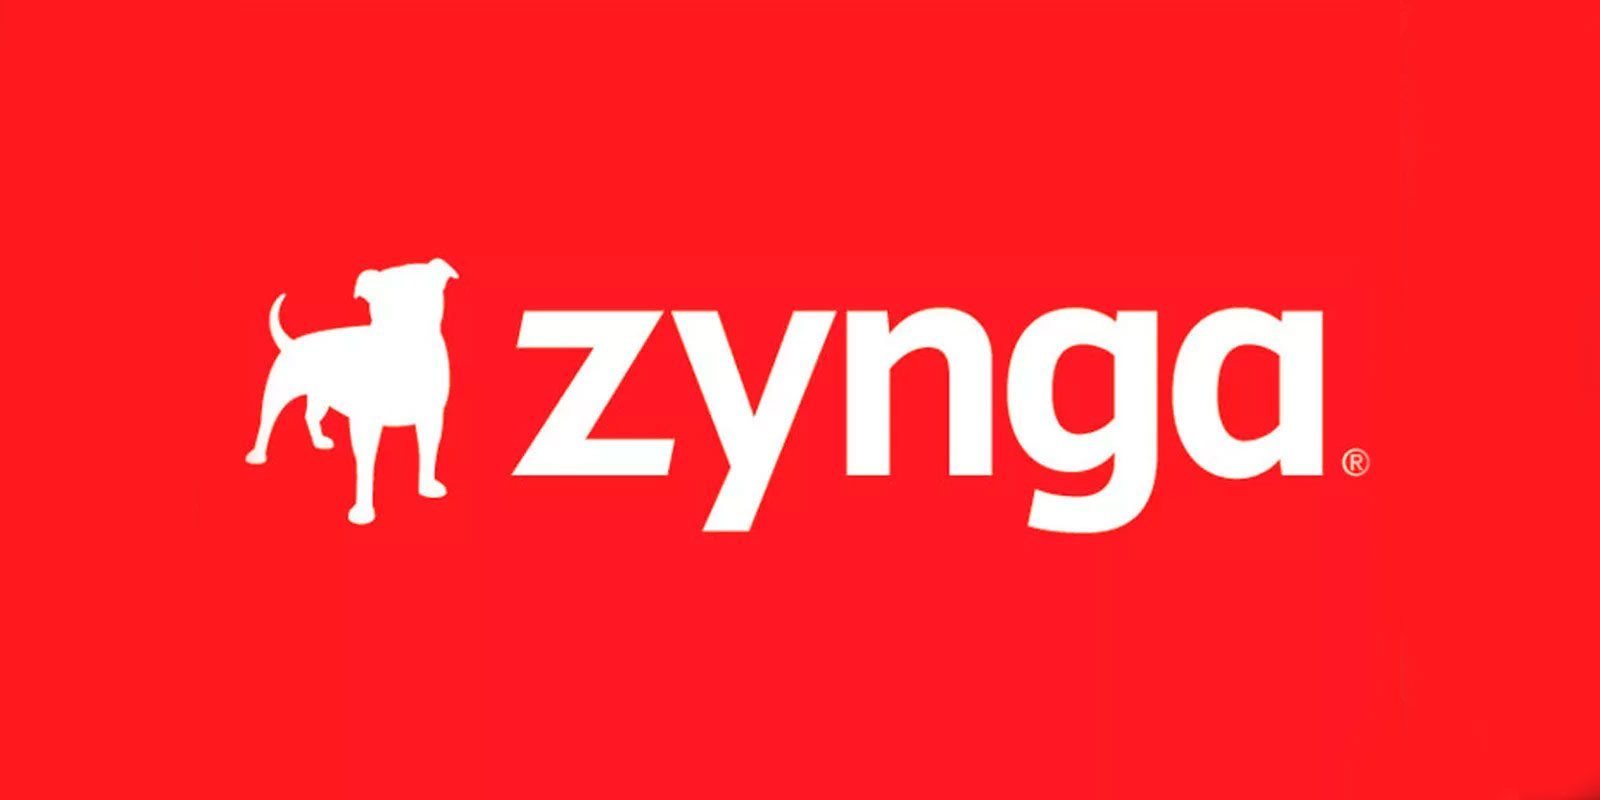 El productor de Zynga asegura que no todos los estudios realizan crunch